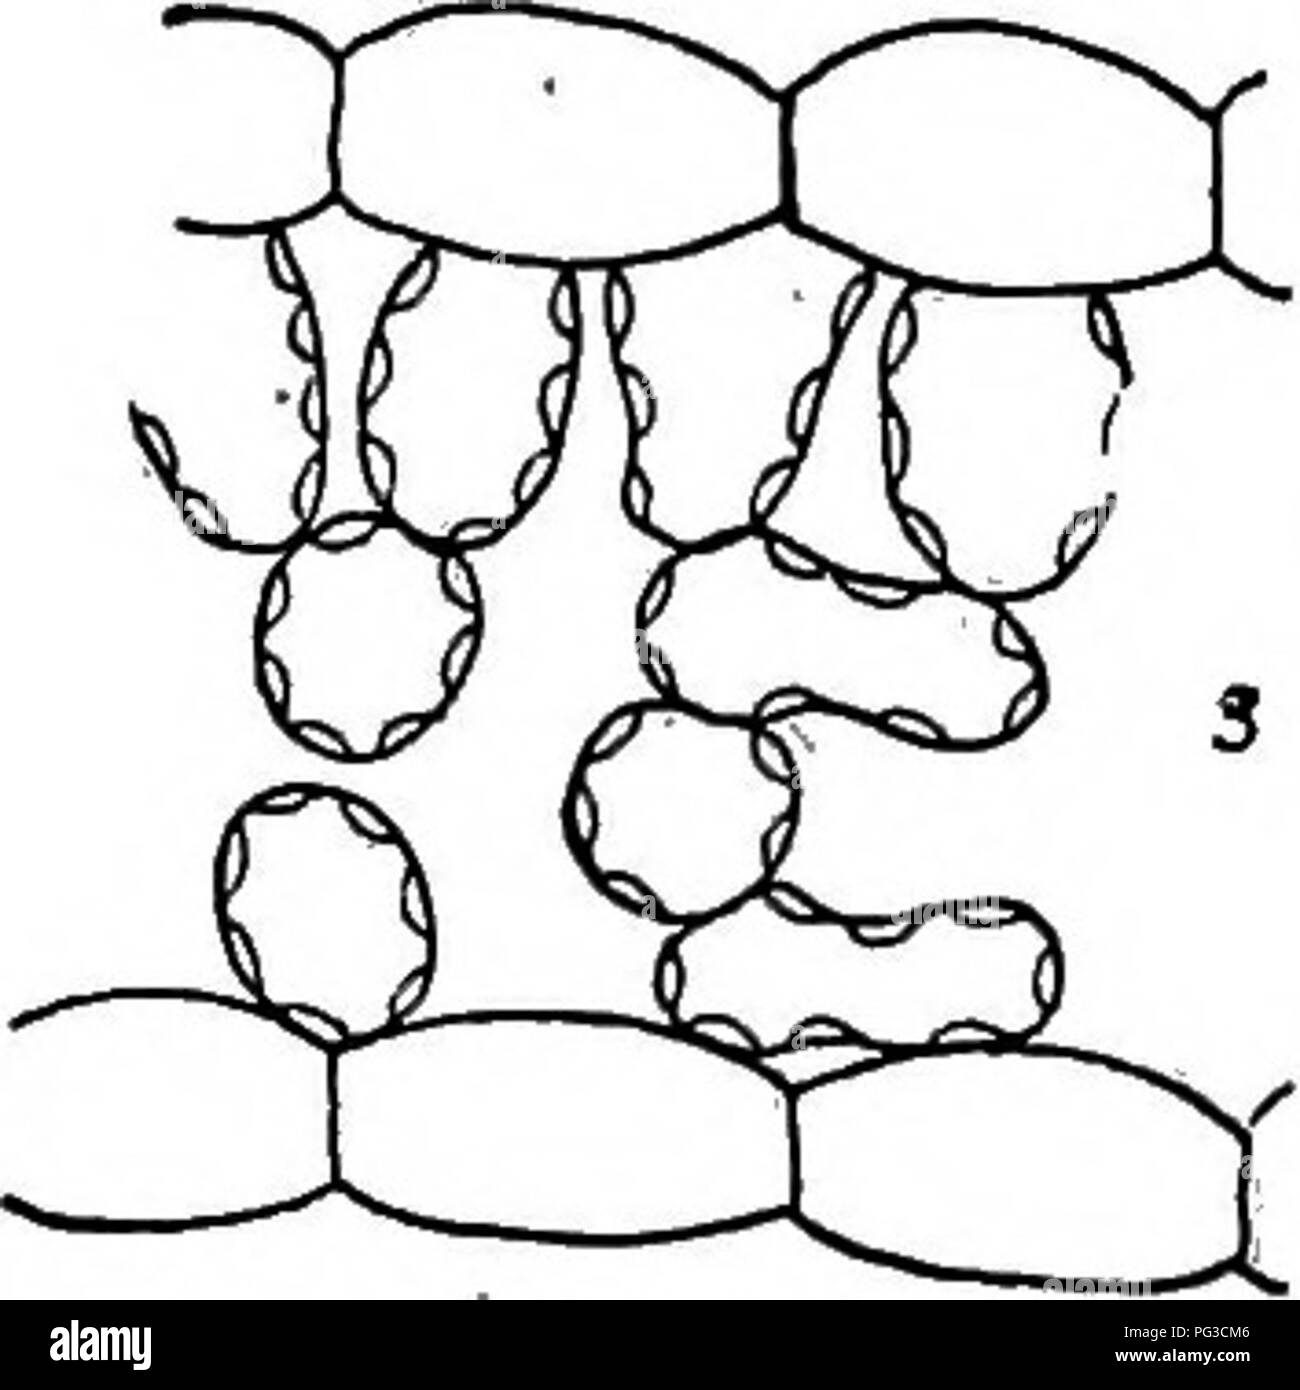 . Forschungsmethoden in der Ökologie. Ökologie der Pflanzen. Abb. 38. Der Allionia Ecads linearis, die Position der Chloroplasten. Die Palisade zeigt, Apostroph, der Schwamm epistrophe: 1, Sun Blatt (chresard, 2-5 ^, Licht, 1), (2), ist das Shade Leaf (chresard, ll % Licht,.012); 3, Schatten Blatt (chresard, 11^; Licht,.003). X 250.. Bitte beachten Sie, dass diese Bilder sind von der gescannten Seite Bilder, die digital für die Lesbarkeit verbessert haben mögen - Färbung und Aussehen dieser Abbildungen können nicht perfekt dem Original ähneln. extrahiert. Clements, Frederic E. (Frederic Edward), 1874-1945. Lincoln, Neb. , Univ Stockfoto